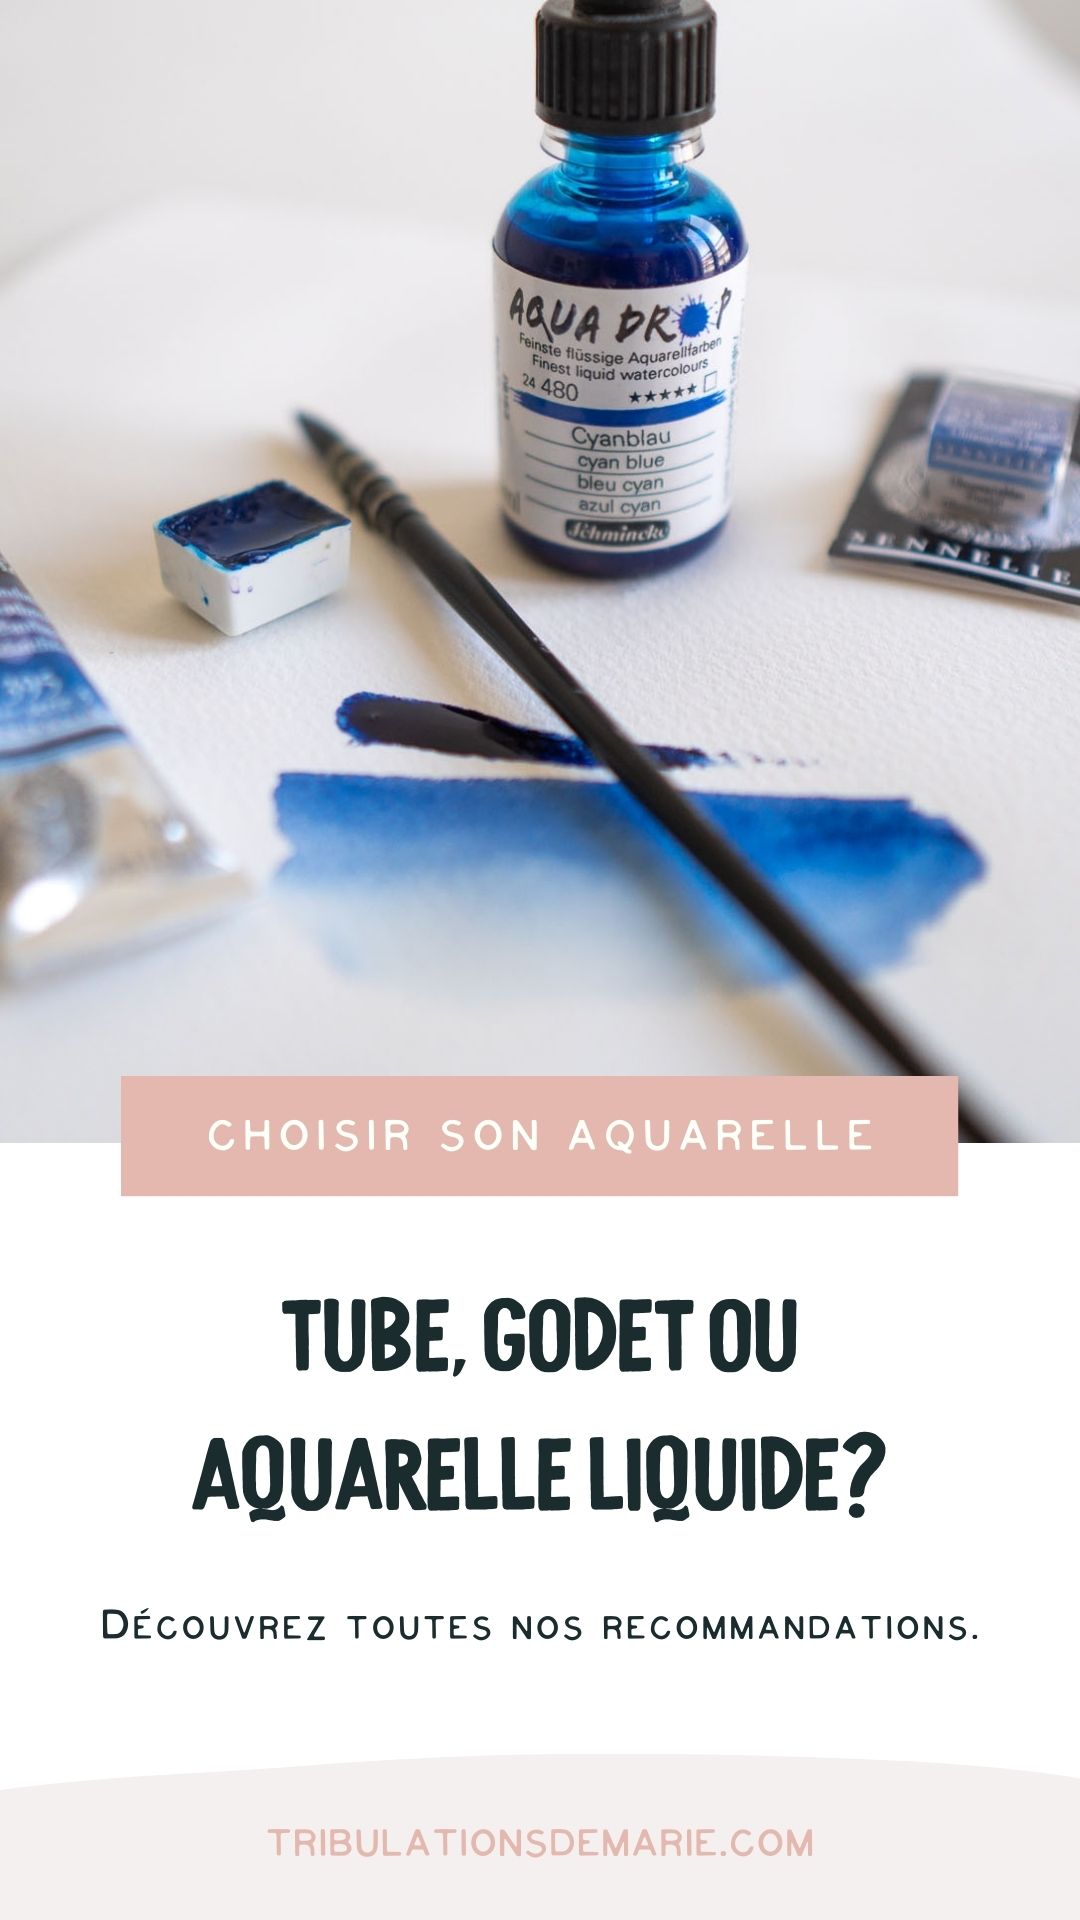 Toutes nos recommandations pour choisir son aquarelle: tube, godet ou aquarelle liquide ?